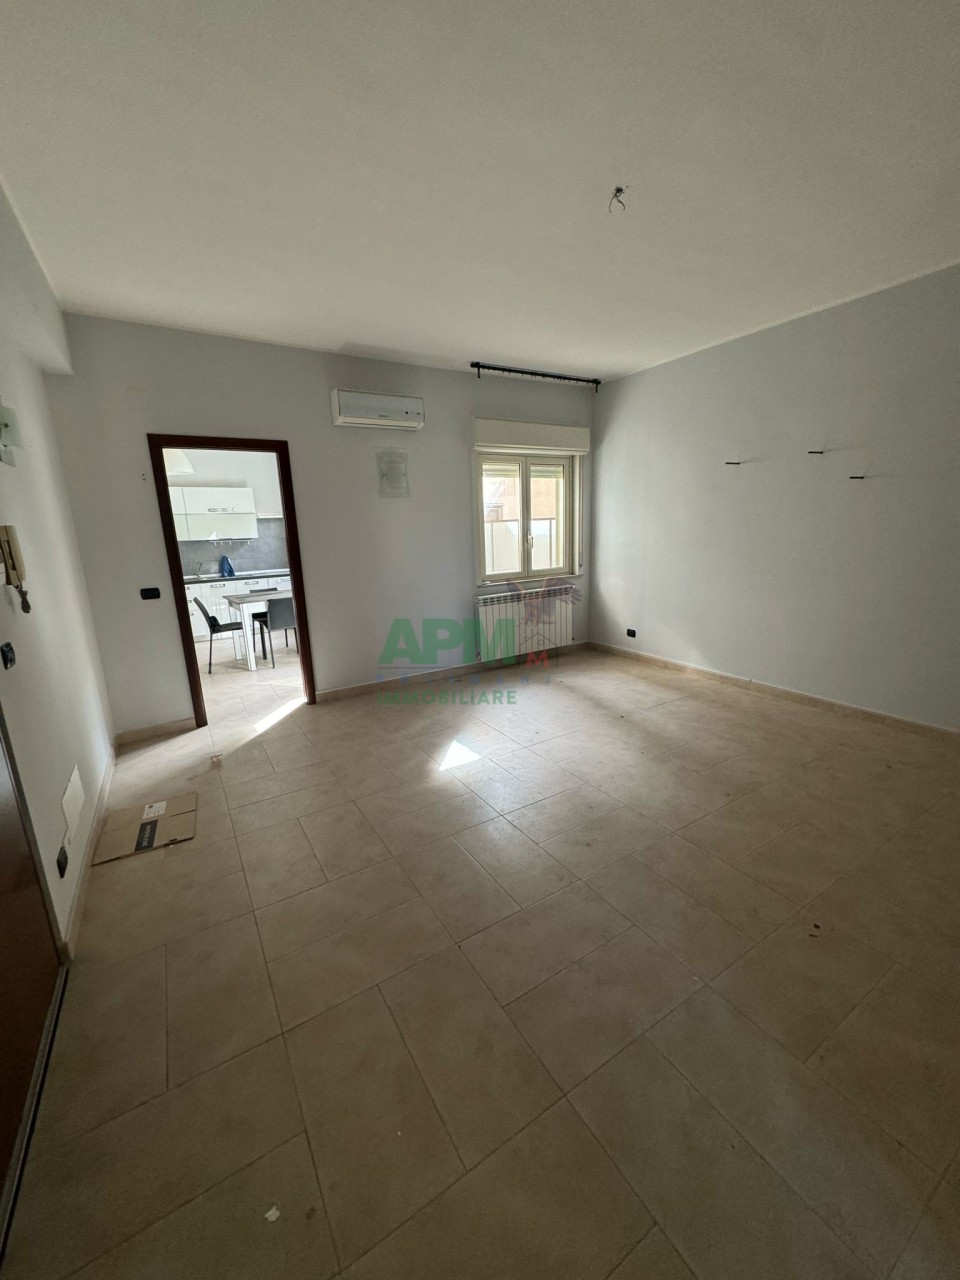 Appartamento in vendita a Reggio Calabria, 4 locali, prezzo € 103.000 | PortaleAgenzieImmobiliari.it